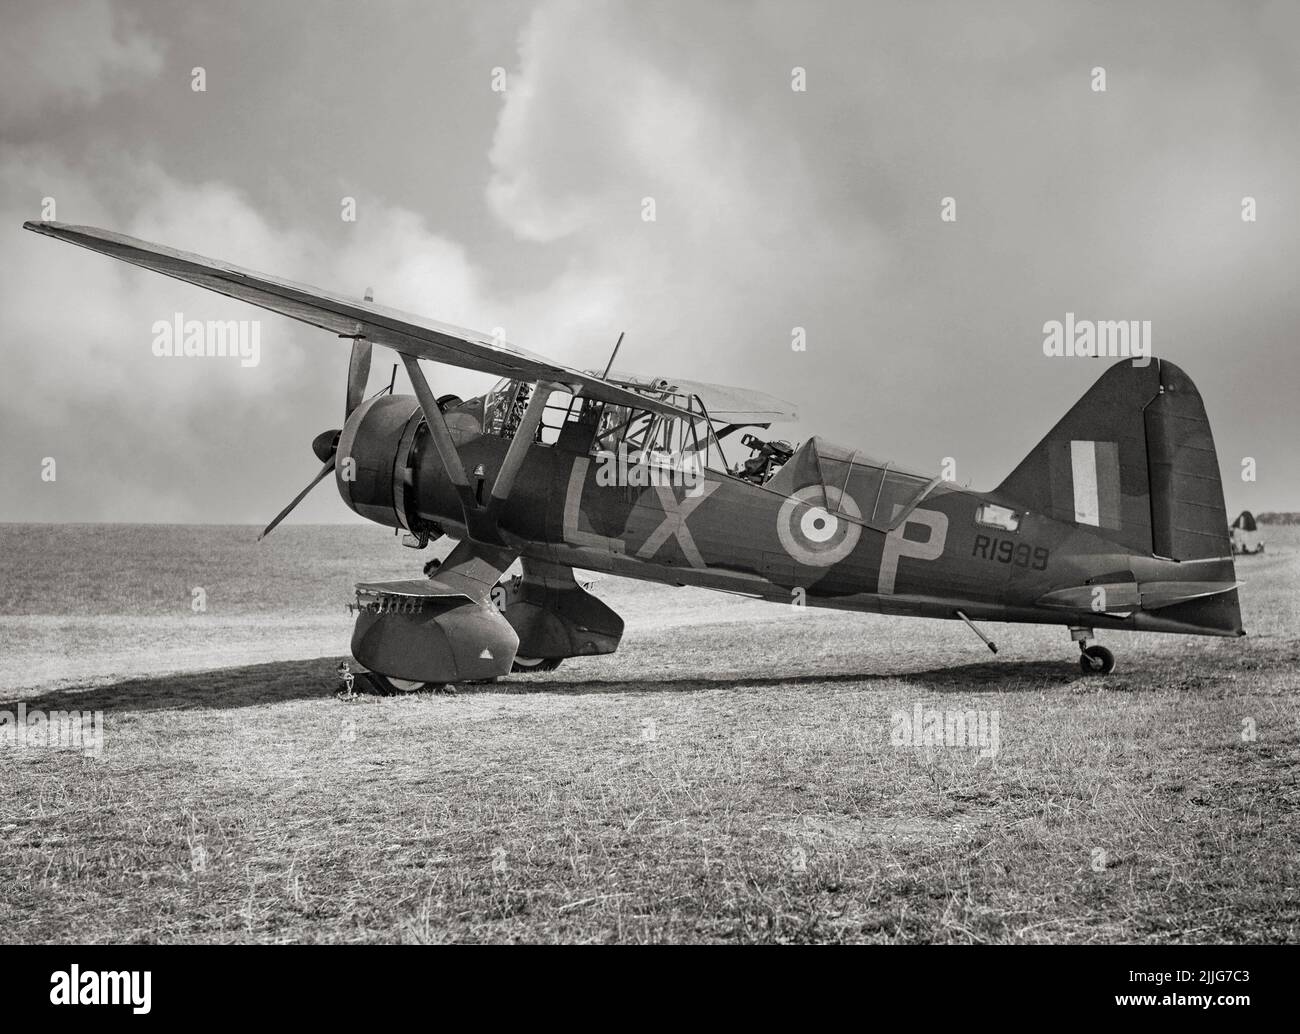 Un Westland Lysander Mark II del Escuadrón nº 225 RAF, en mantenimiento en Tilshead, Wiltshire. Observe la única ametralladora Lewis Mark III en su montaje Fairey en la cabina trasera. El avión era un avión de cooperación y enlace del ejército británico utilizado inmediatamente antes y durante la Segunda Guerra Mundial. Después de quedar obsoleto en el papel de cooperación del ejército, la actuación de la aeronave en campo corto permitió a las misiones clandestinas utilizar pistas de aterrizaje pequeñas e improvisadas detrás de las líneas enemigas para colocar o recuperar agentes, especialmente en la Francia ocupada. Foto de stock